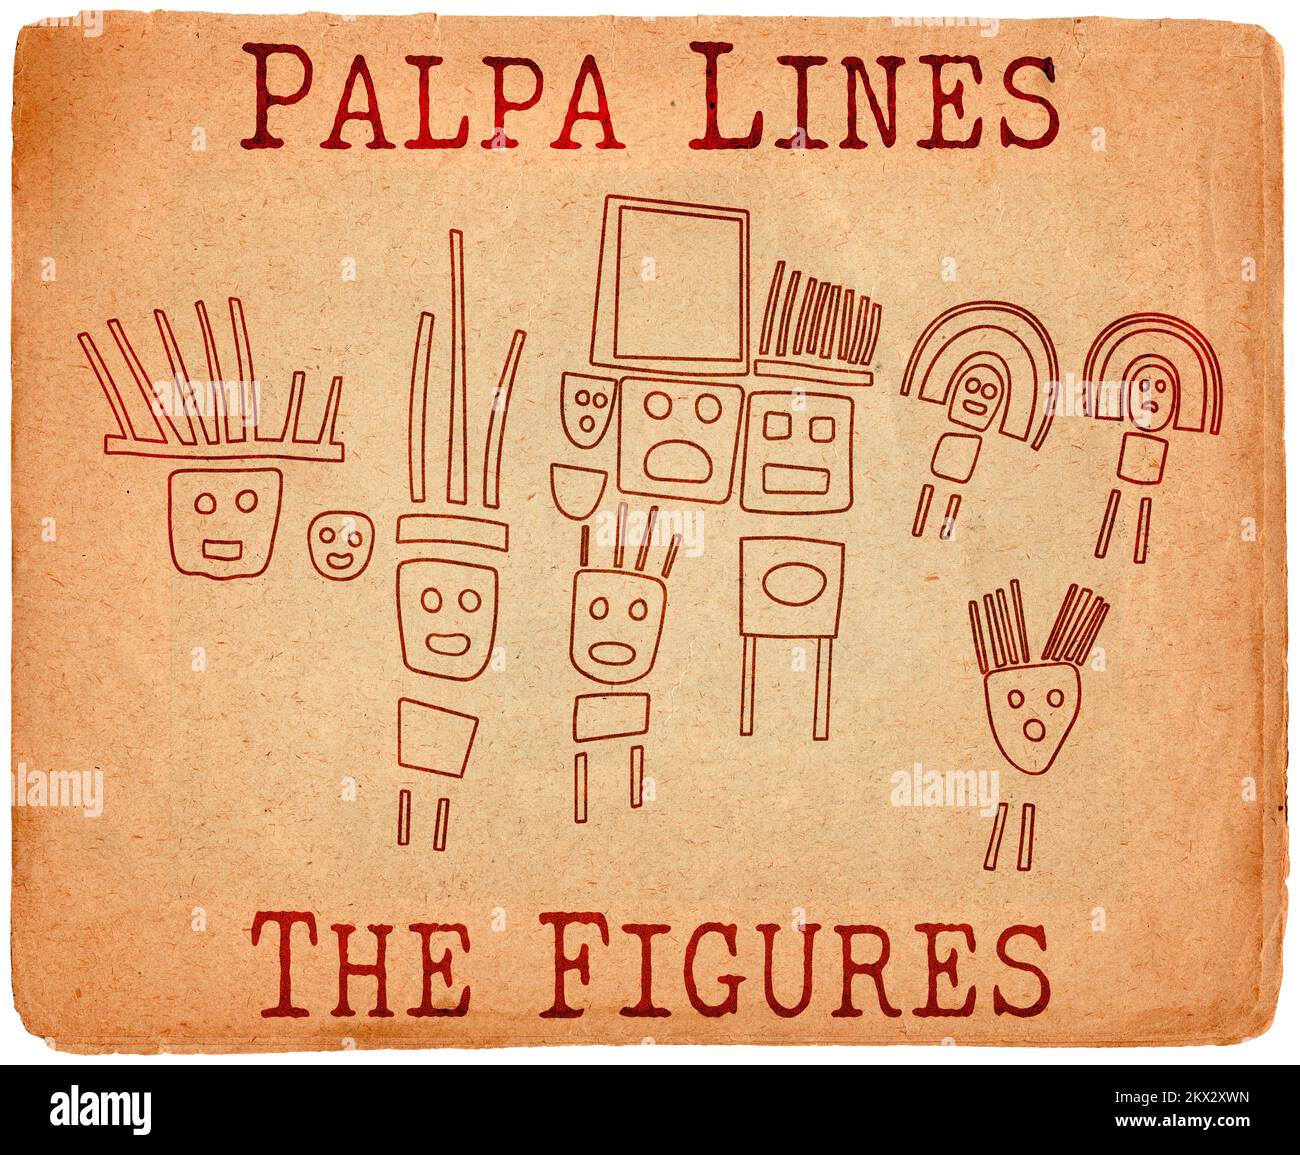 Geoglifici delle figure da Palpa, le linee di Palpa, Perù Foto Stock